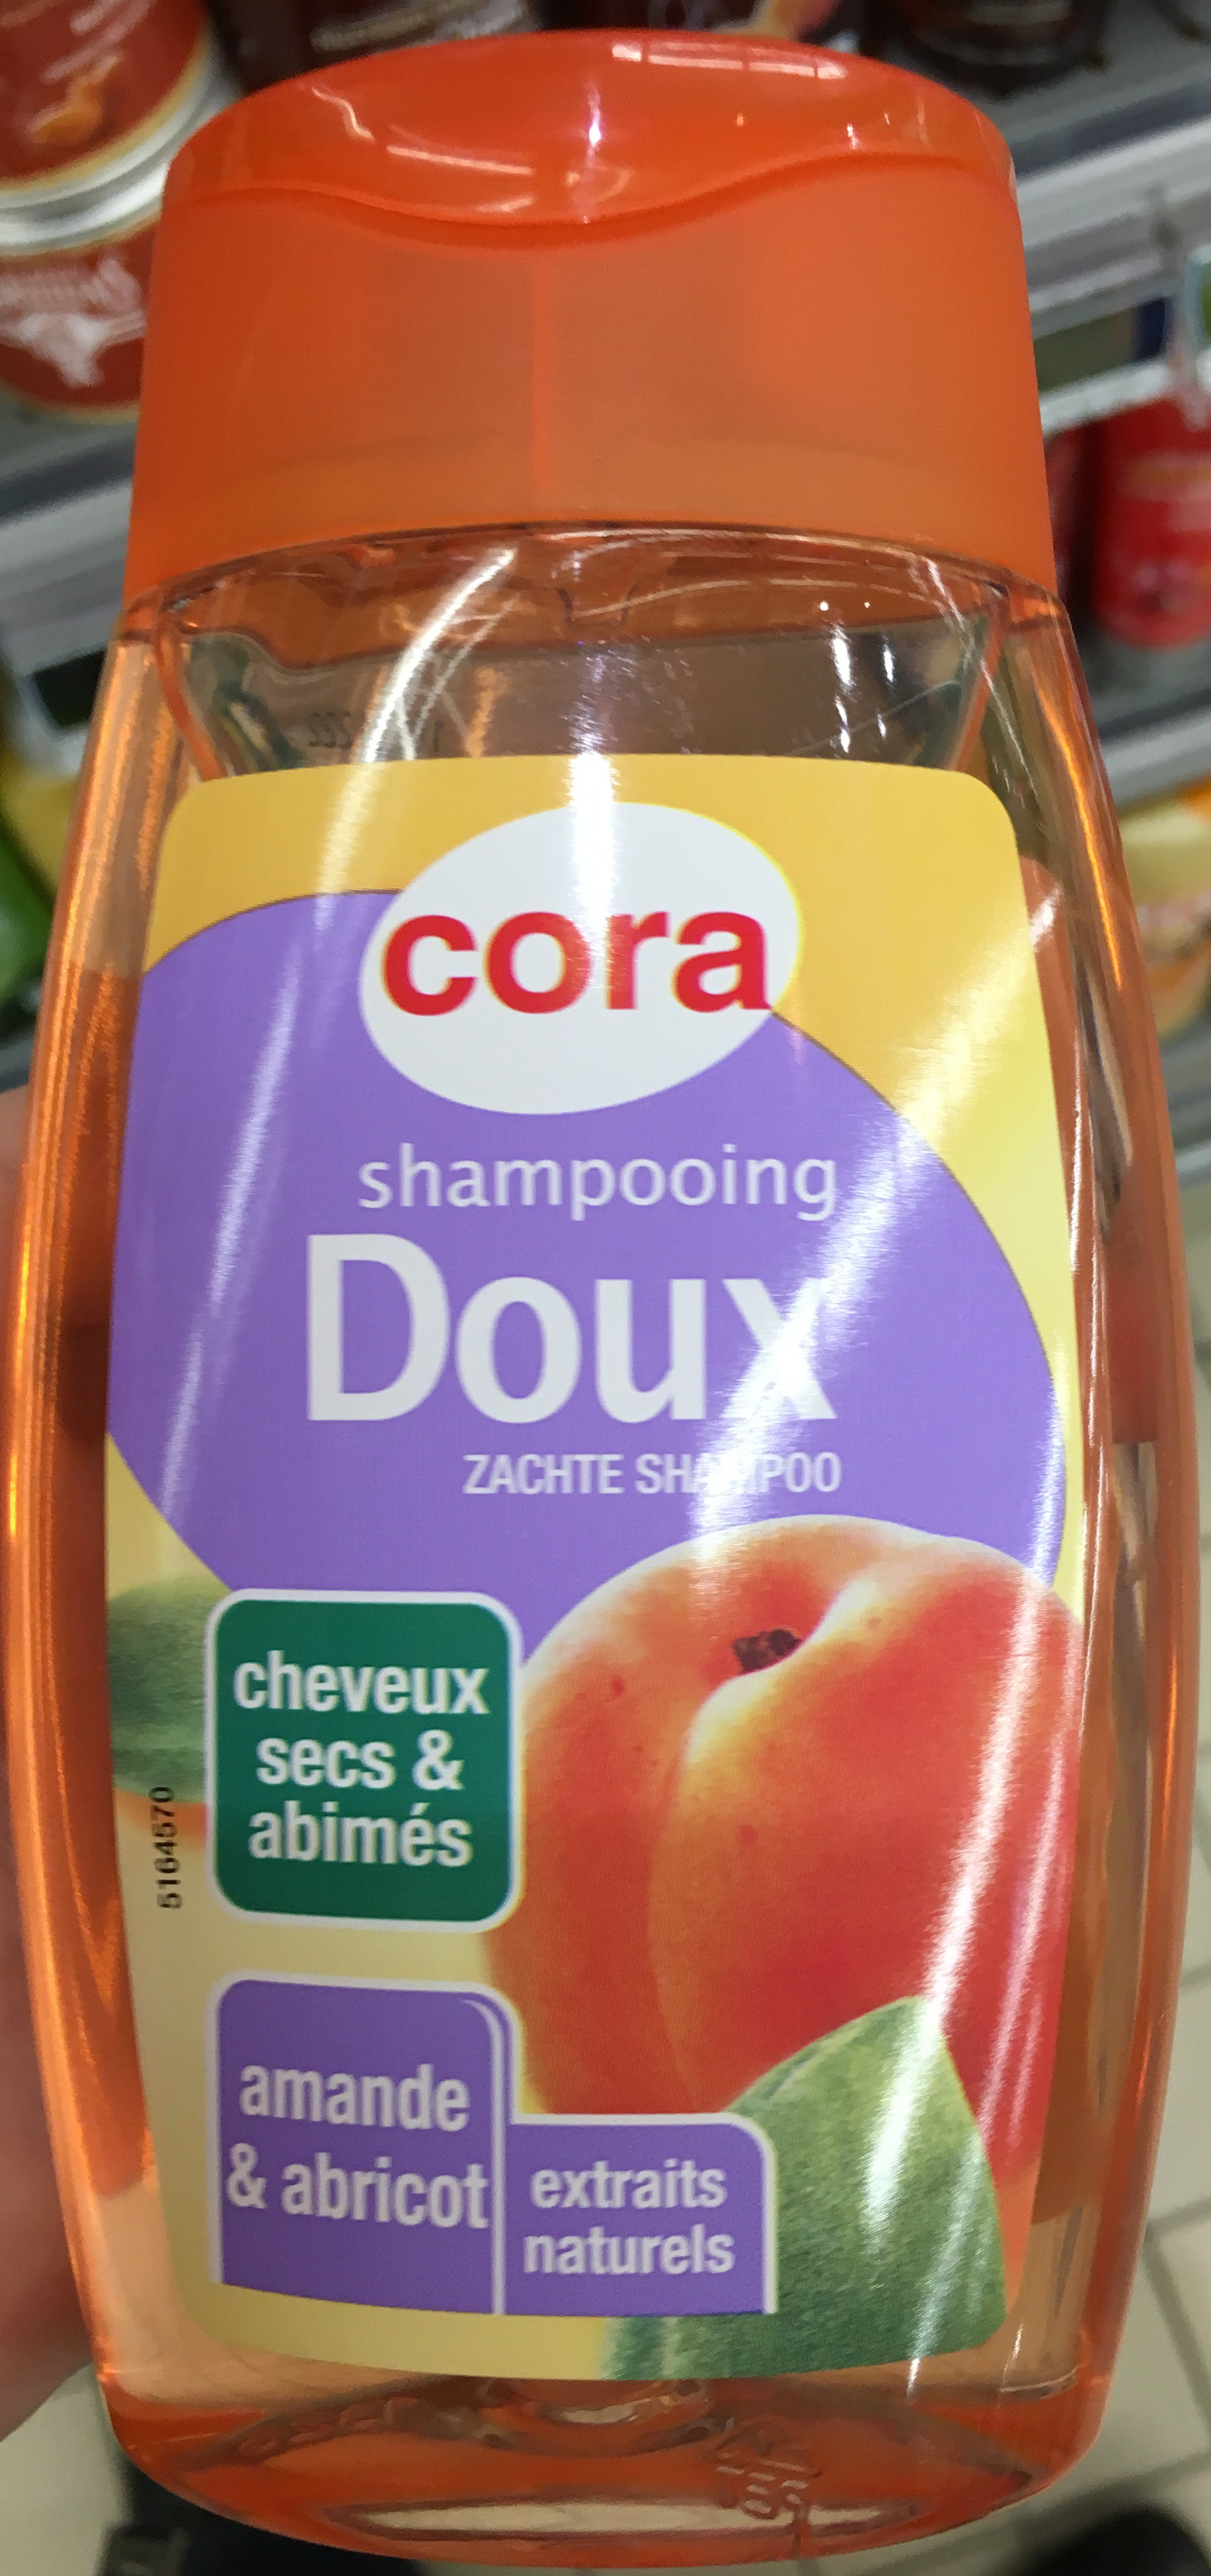 Shampooing Doux Cheveux secs & abimés Amande & Abricot - Produto - fr